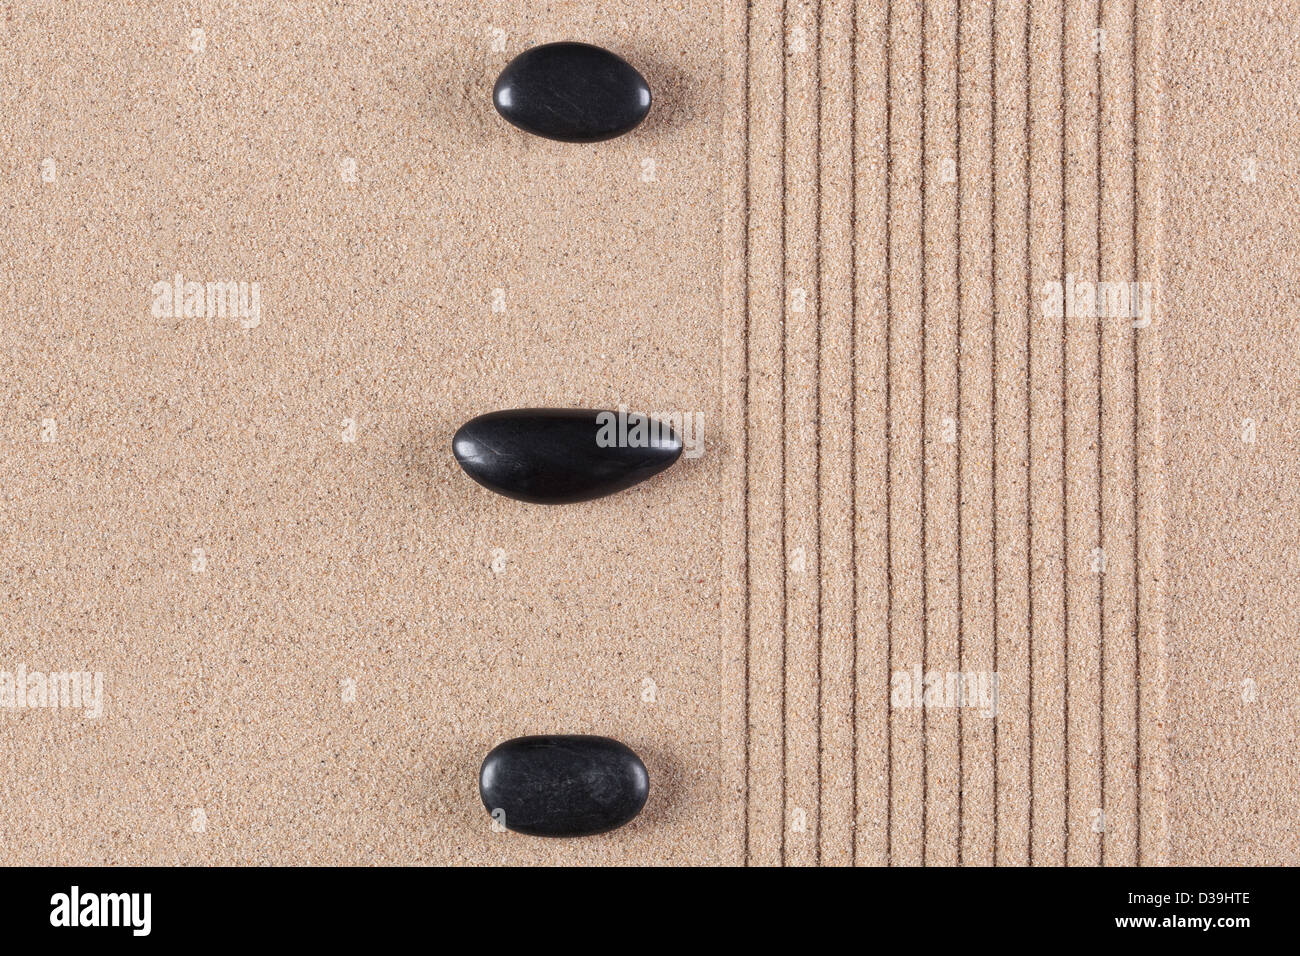 Three black pebbles on a raked sand zen garden. Stock Photo